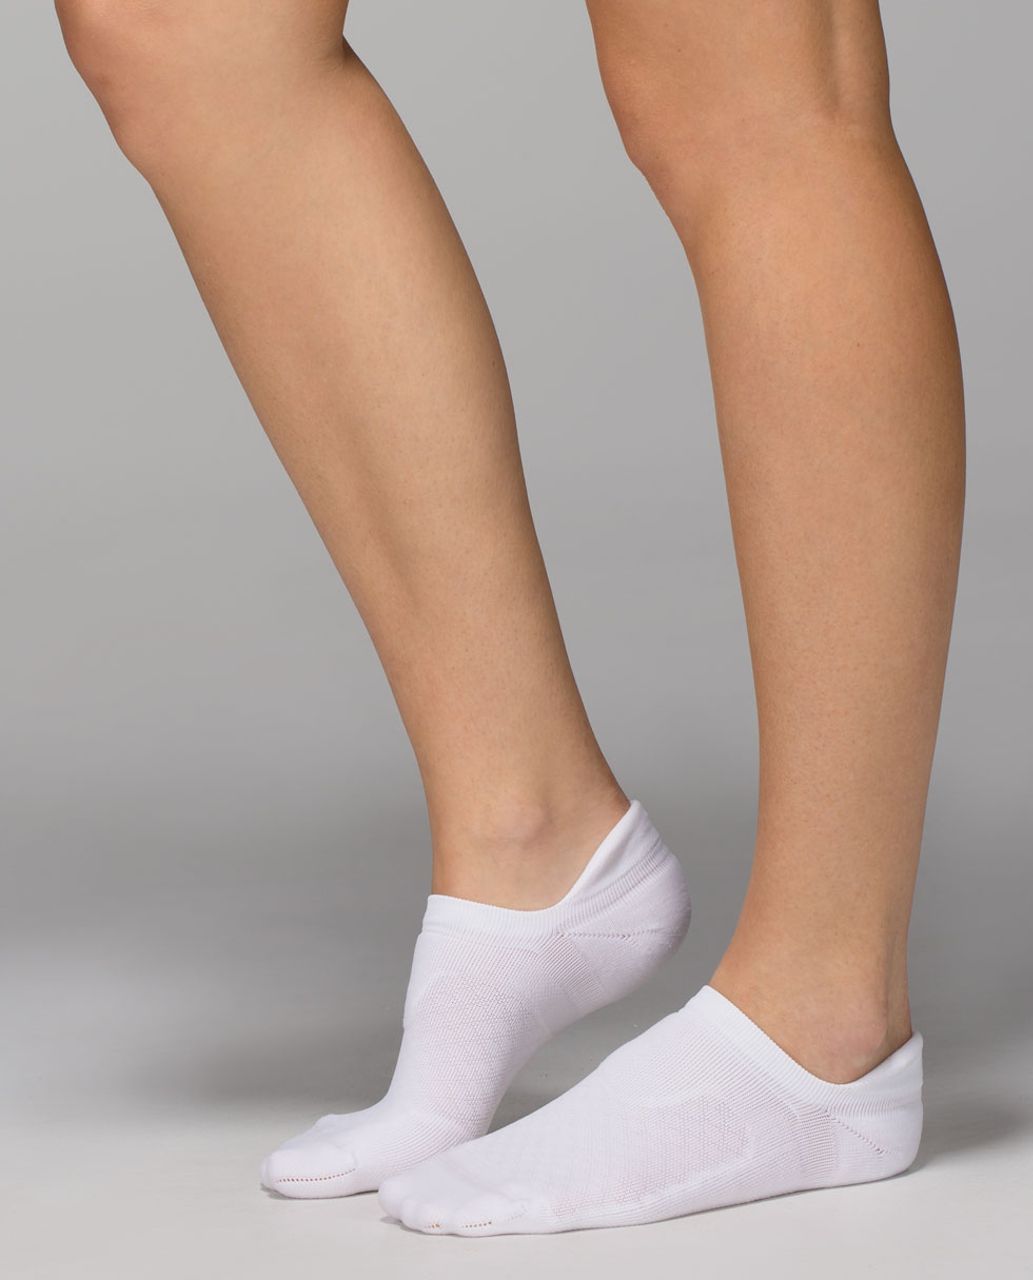 Lululemon Women's Ultimate Padded Run Sock - Checker White (First Release)